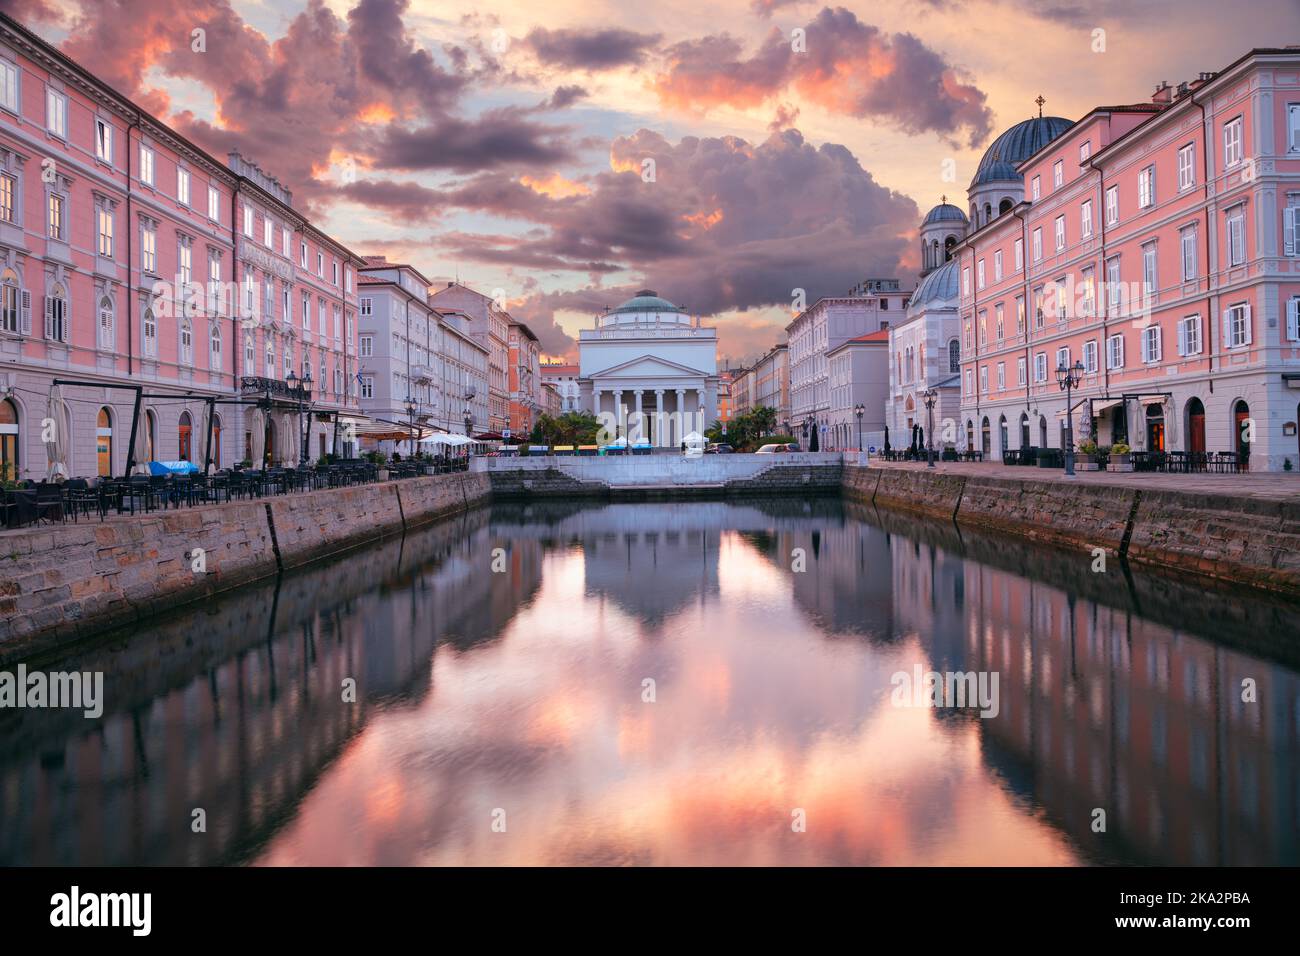 Trieste, Italia. Immagine del centro di Trieste all'alba estiva. Foto Stock